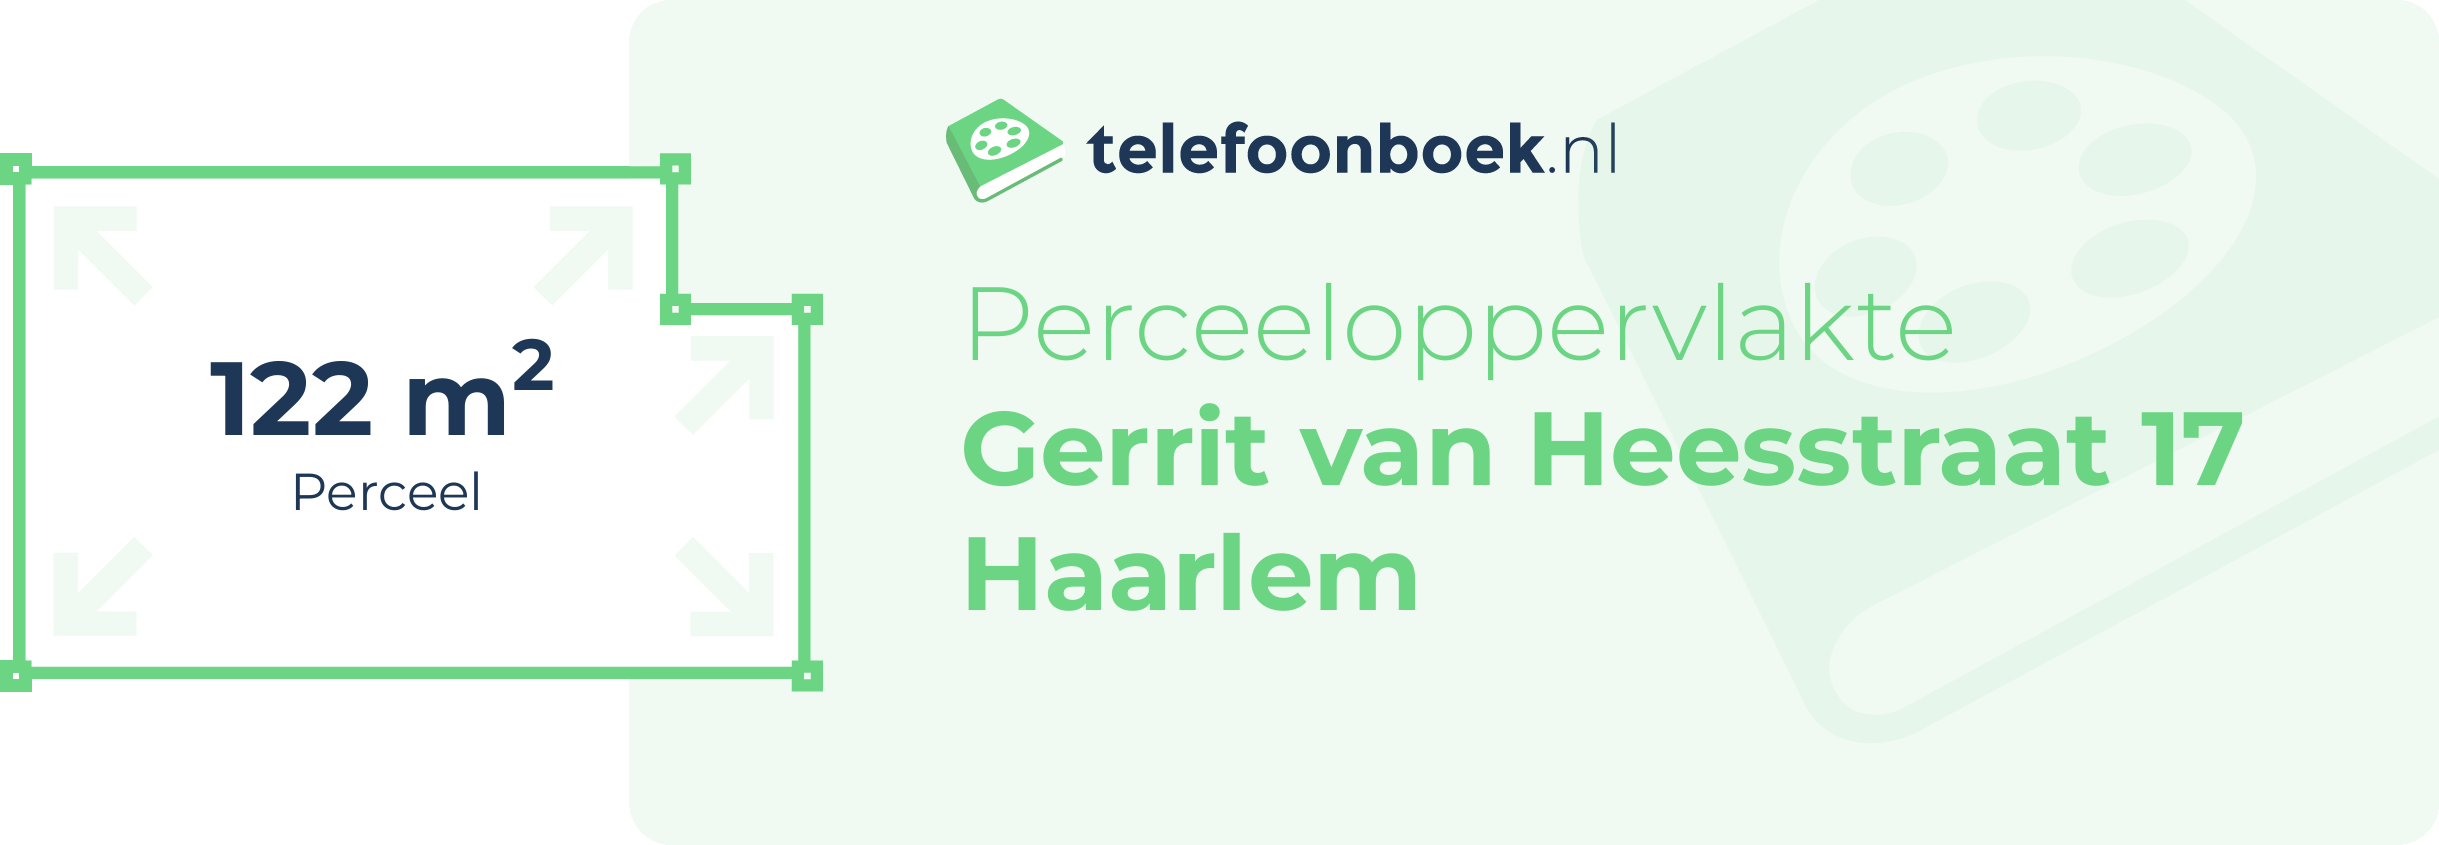 Perceeloppervlakte Gerrit Van Heesstraat 17 Haarlem